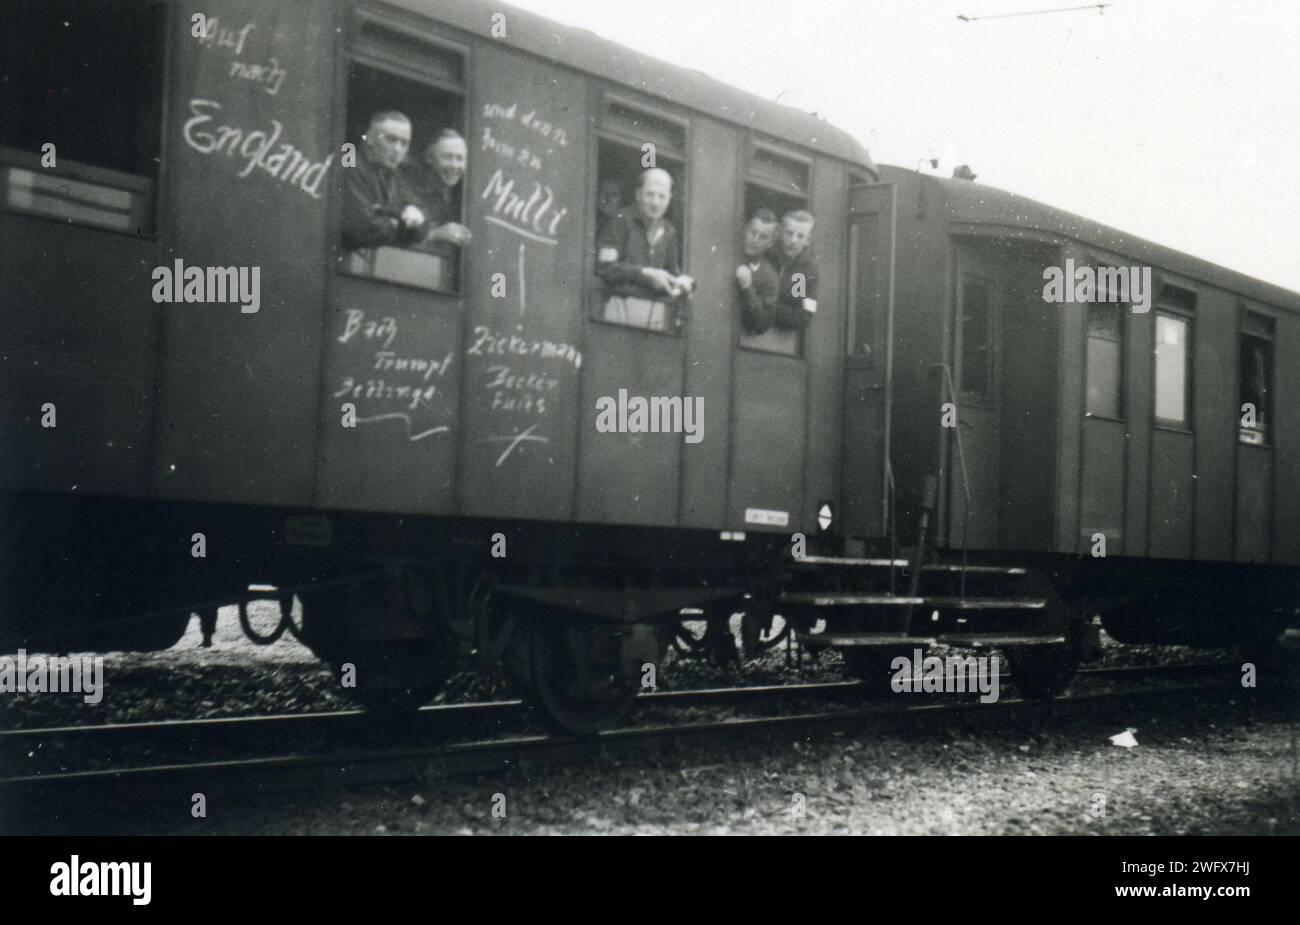 Seconde guerre mondiale, soldats allemands se rendant sur le front ouest, en provenance d'Autriche, le 18 août 1940, le train porte l'inscription contre l'Angleterre Banque D'Images